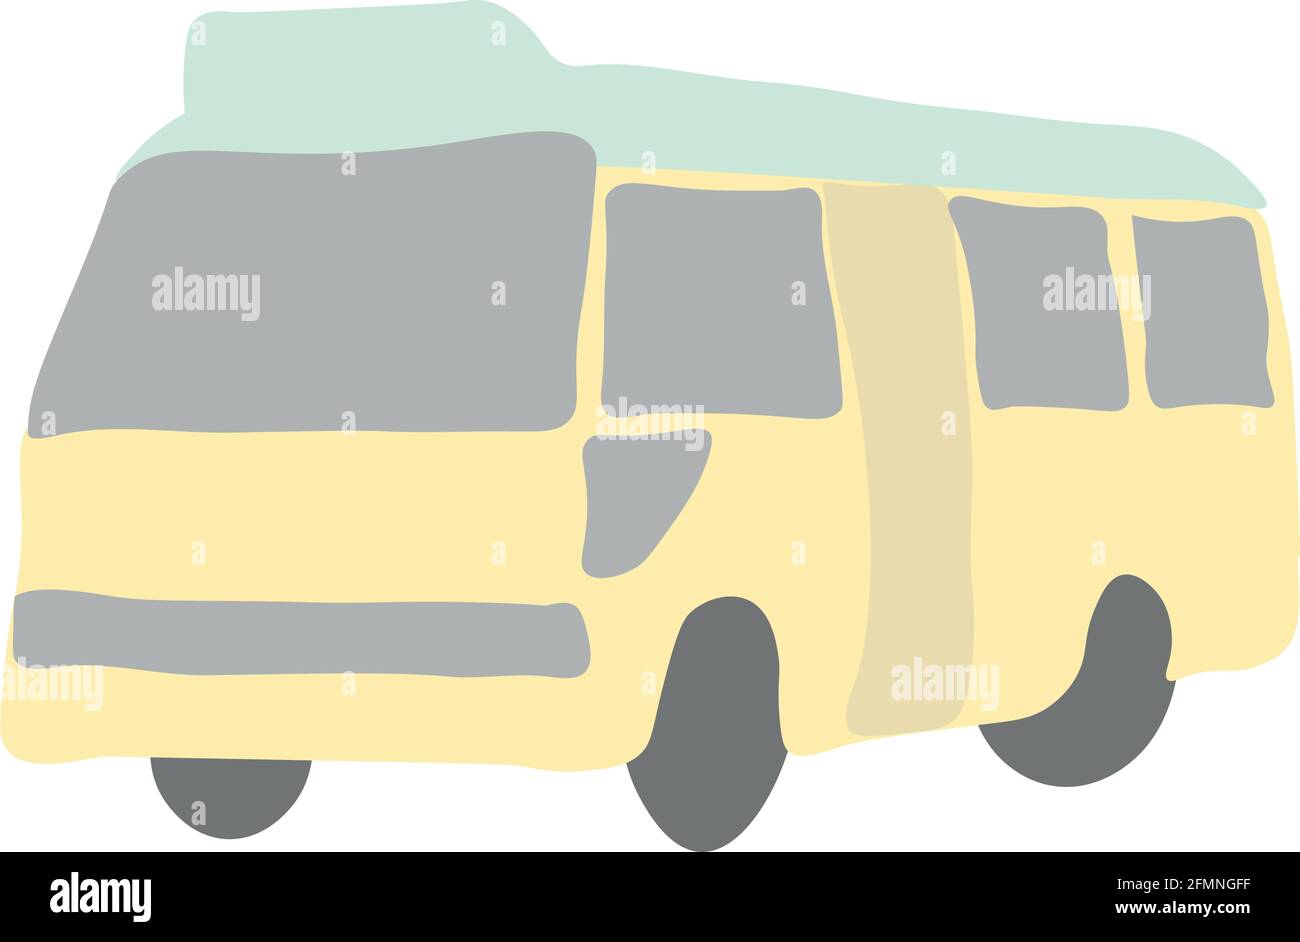 hong kong minibus minimalisme résumé graphique simple plat Illustration de Vecteur